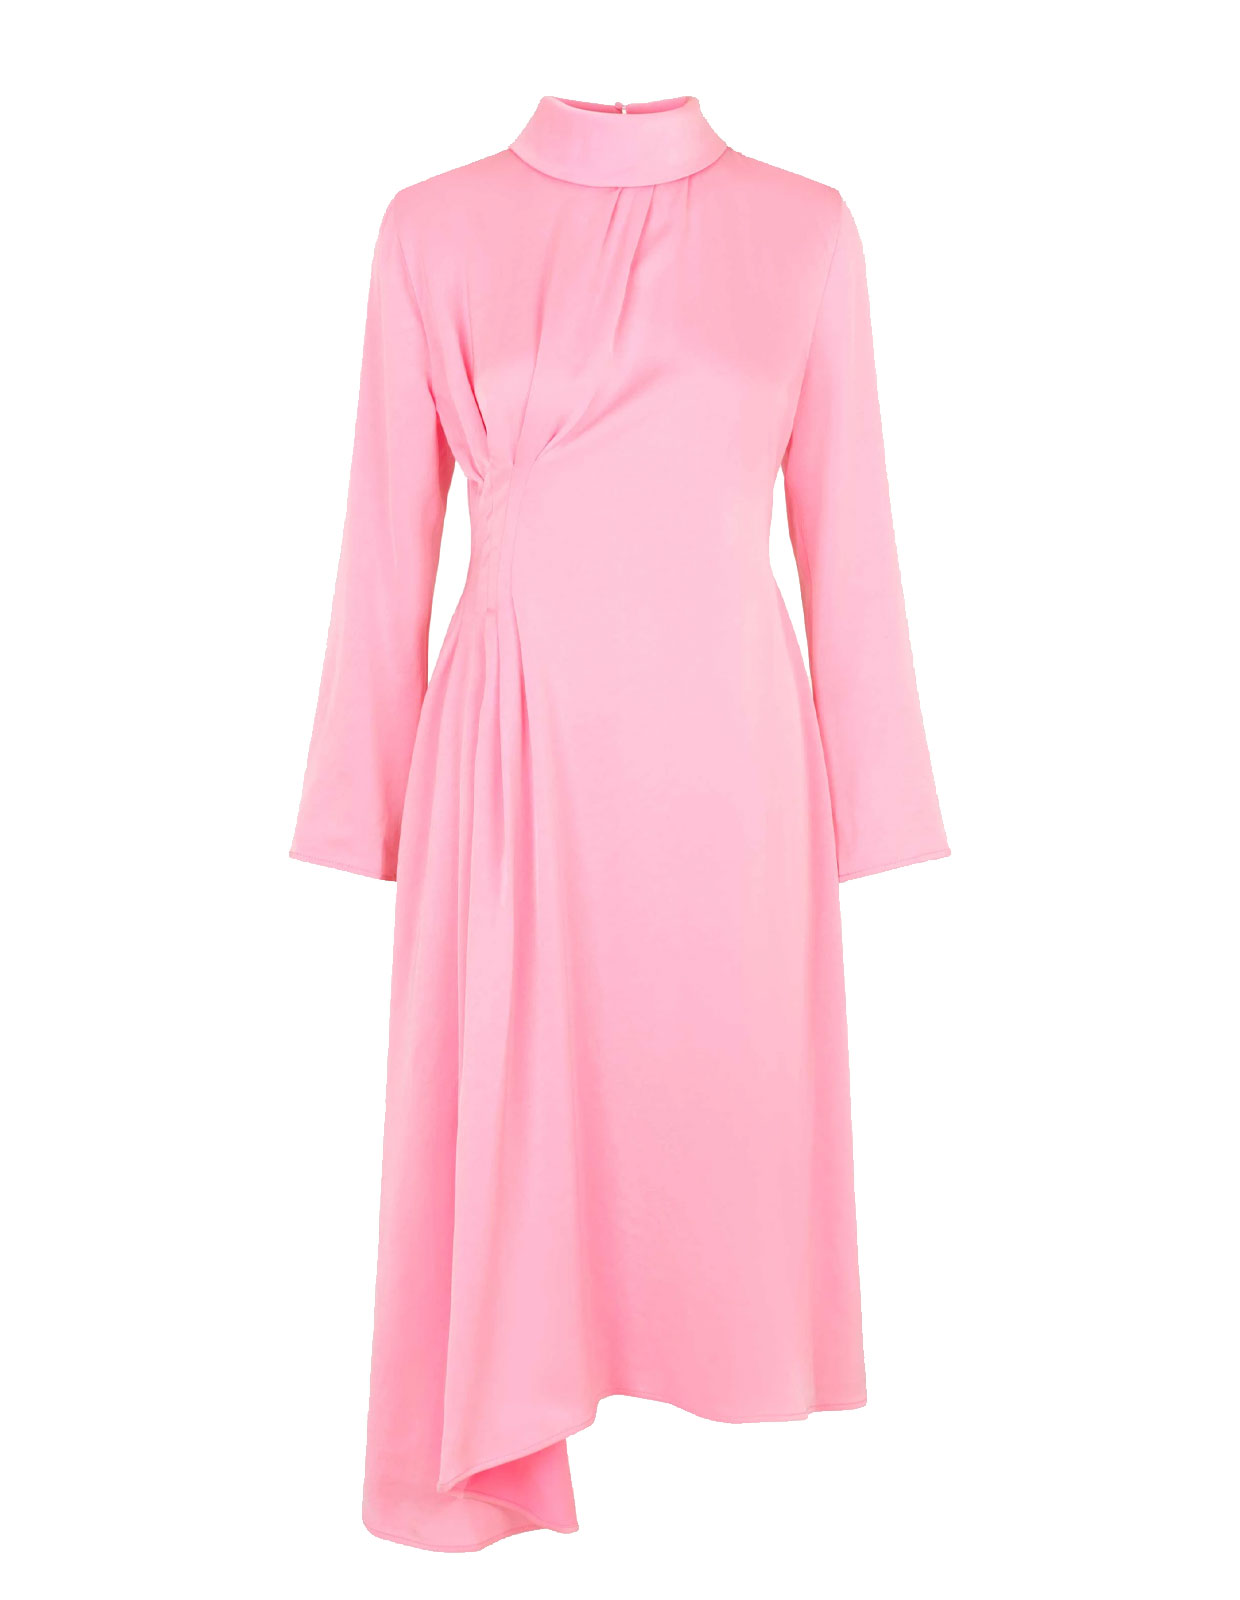 Arlinda Dress Pink